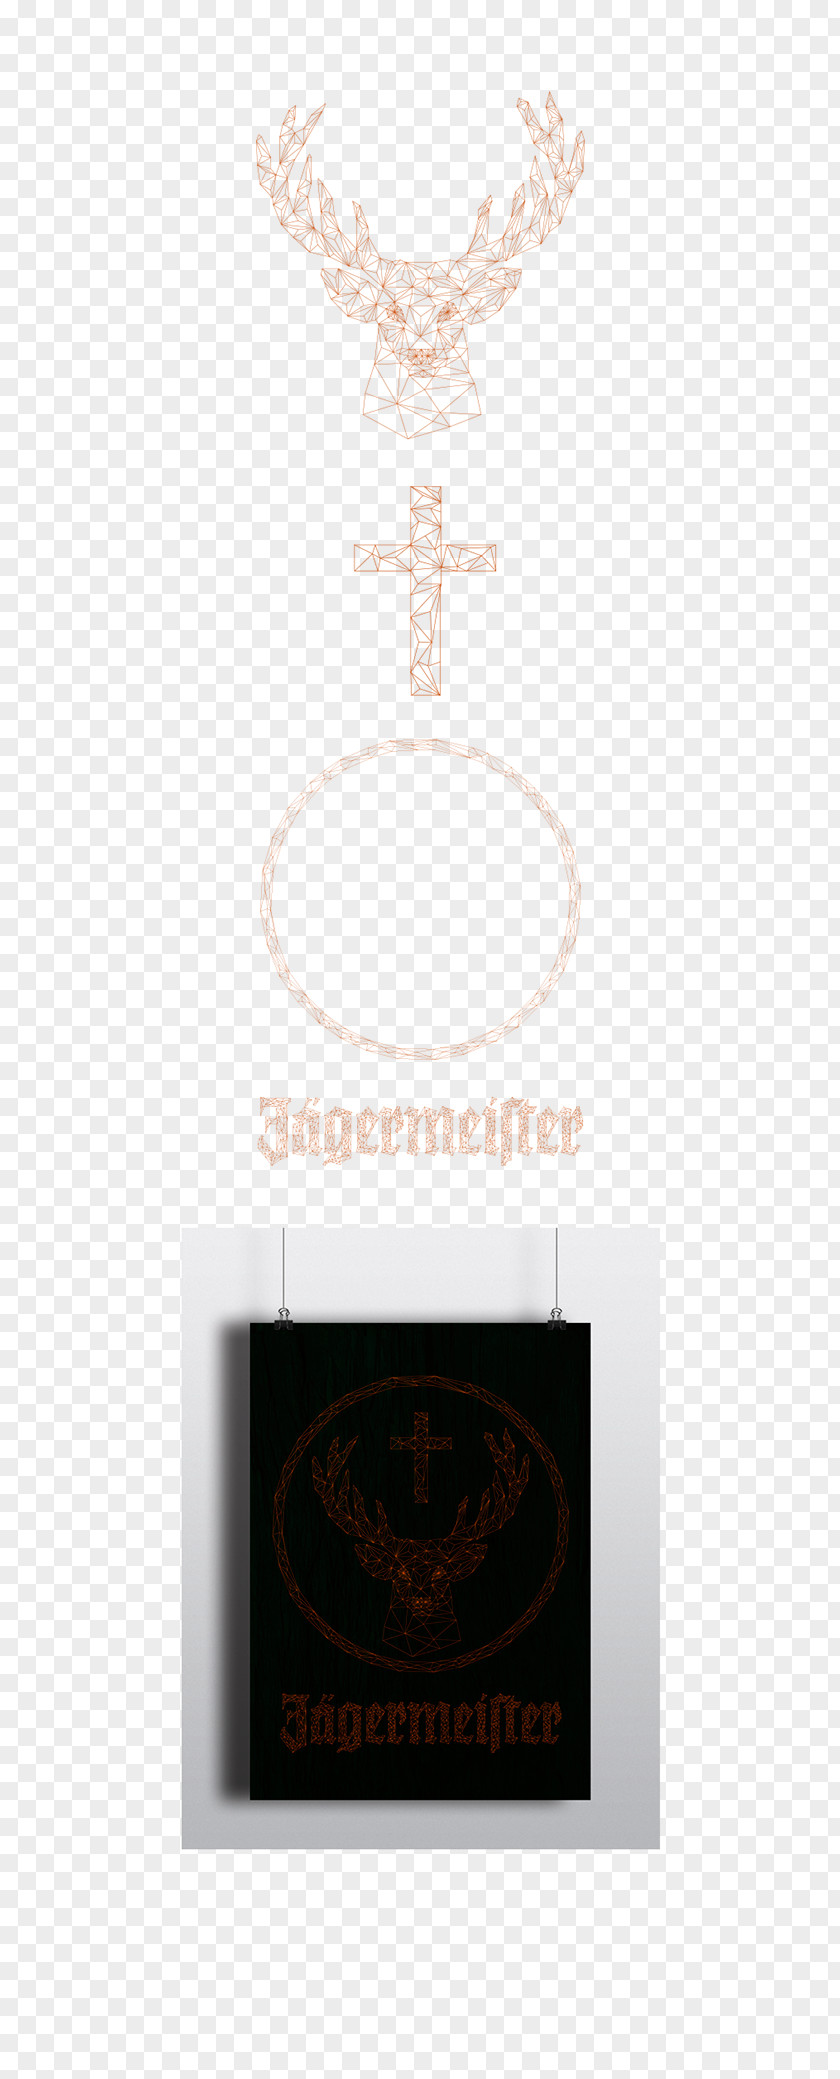 Jagermeister Product Design Brand Logo Font PNG